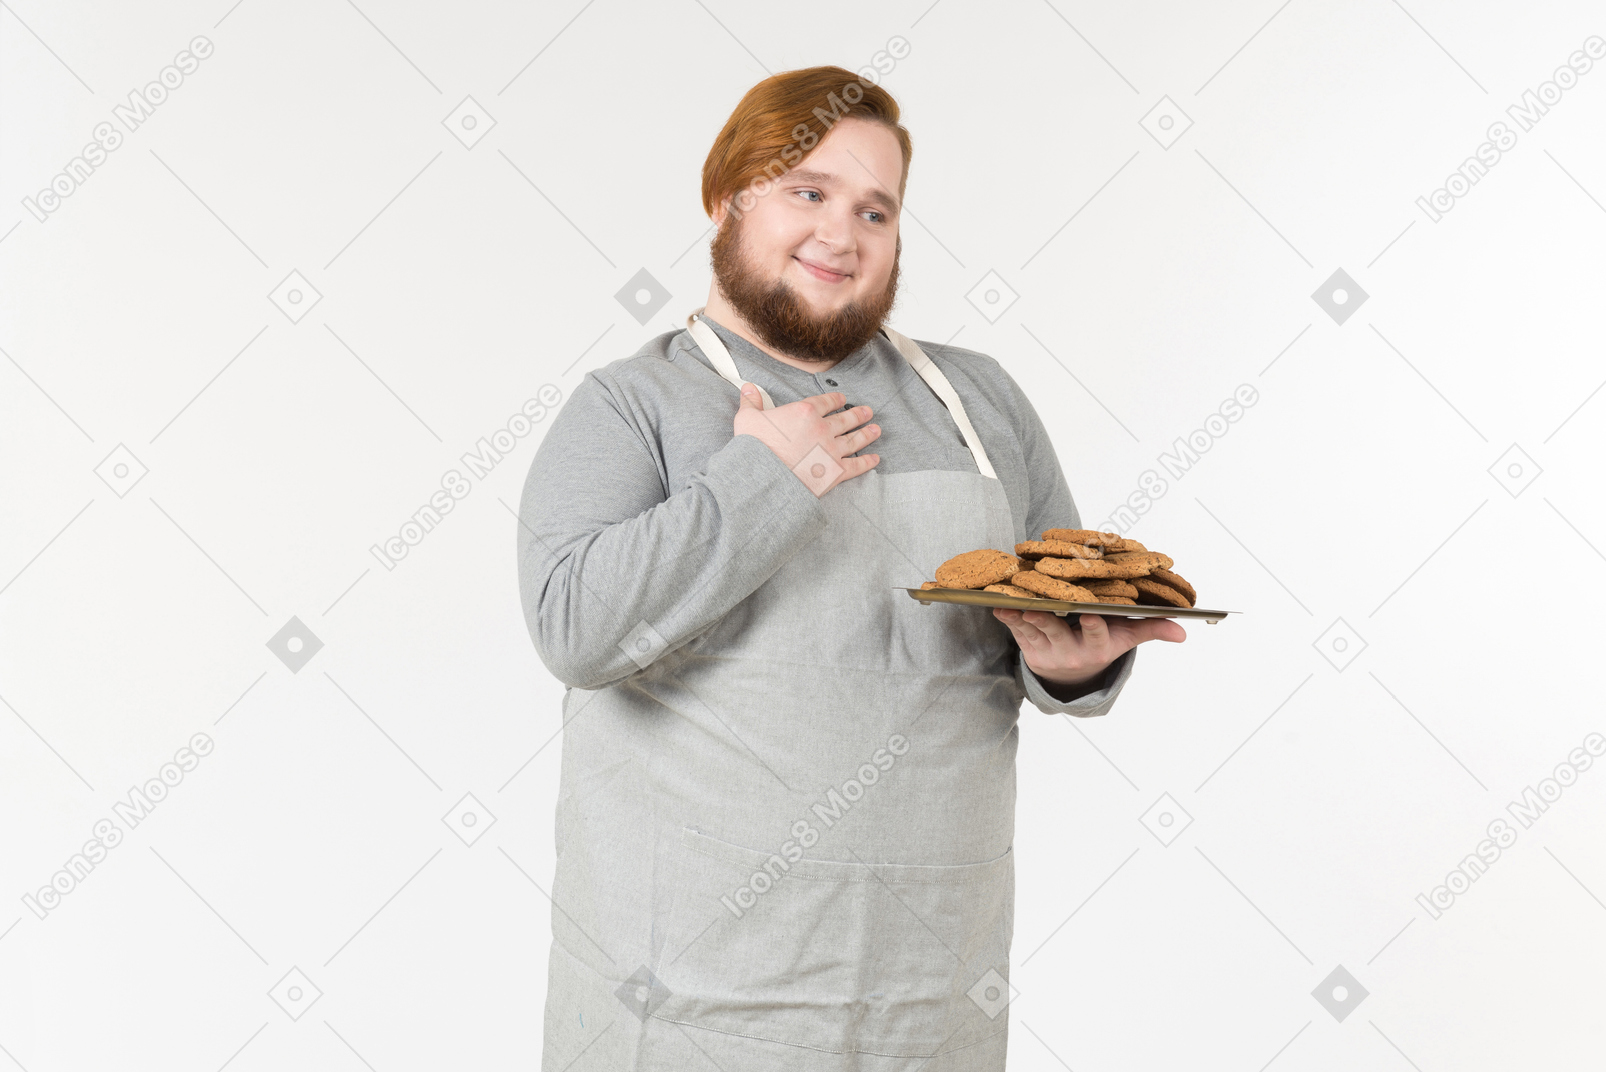 Ein fetter bäcker mit teller mit keksen sieht zufrieden aus